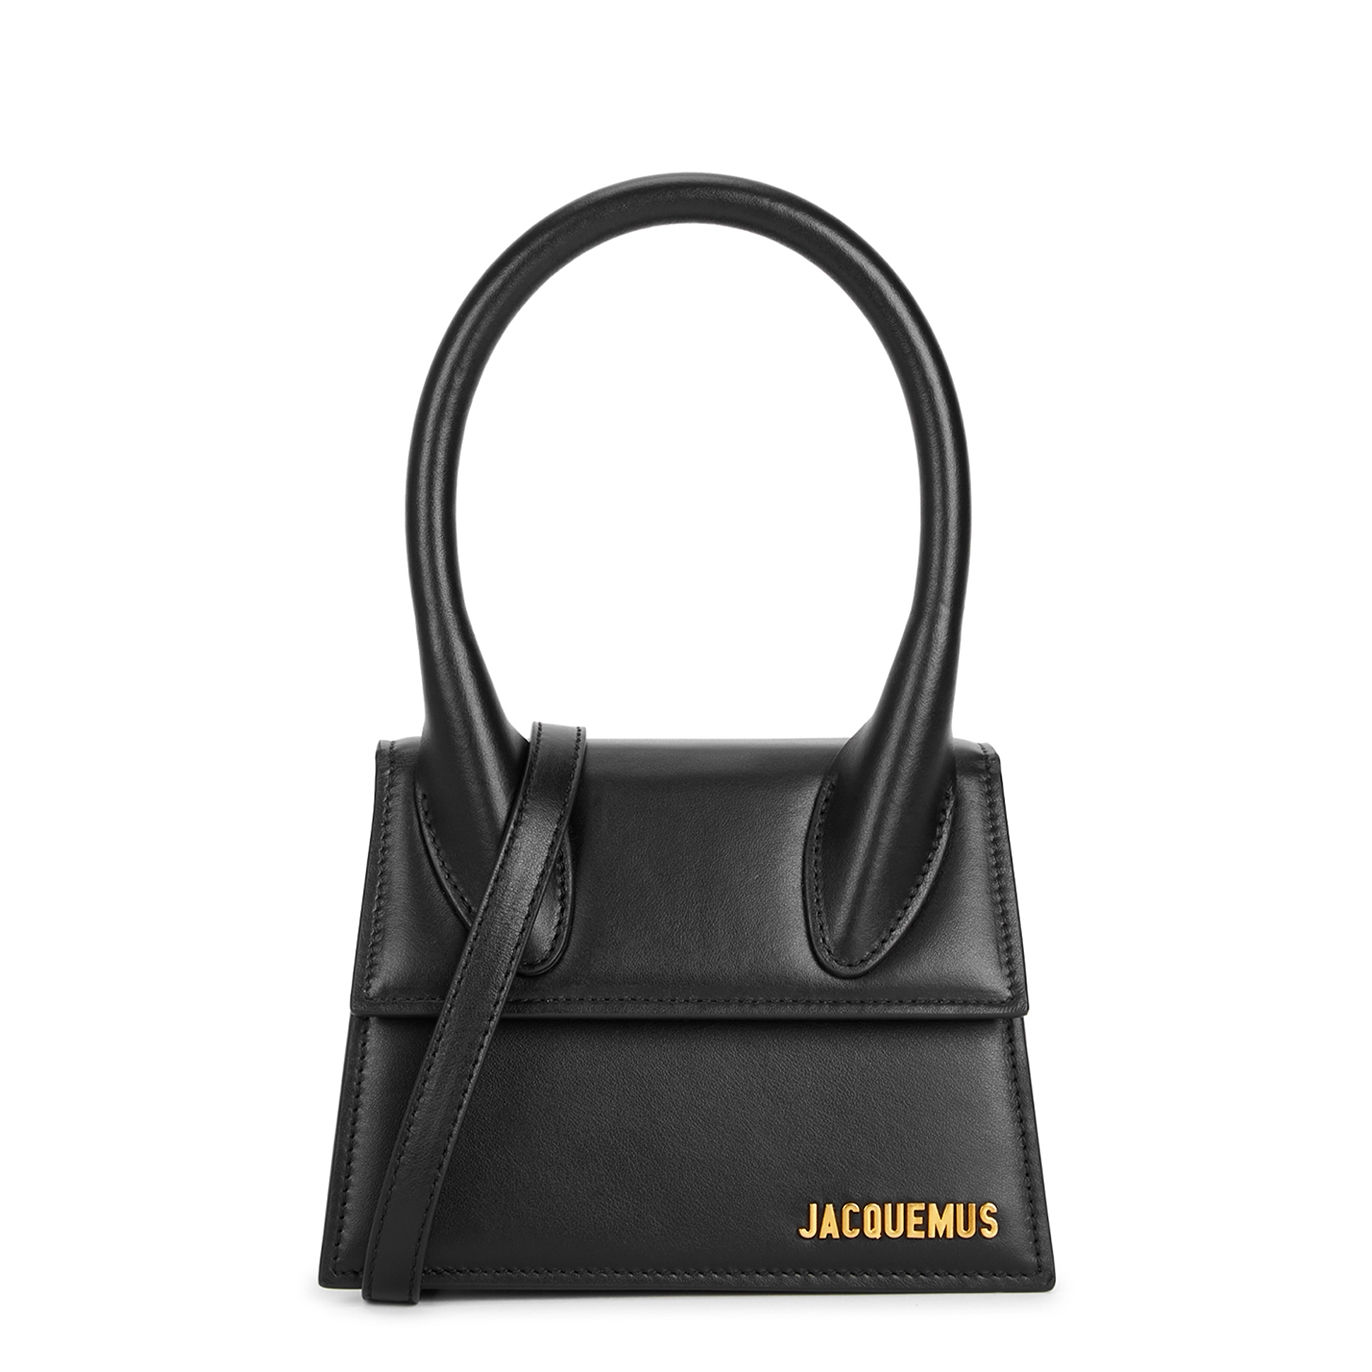 Jacquemus Le Chiquito Moyen black leather top handle bag - Harvey Nichols